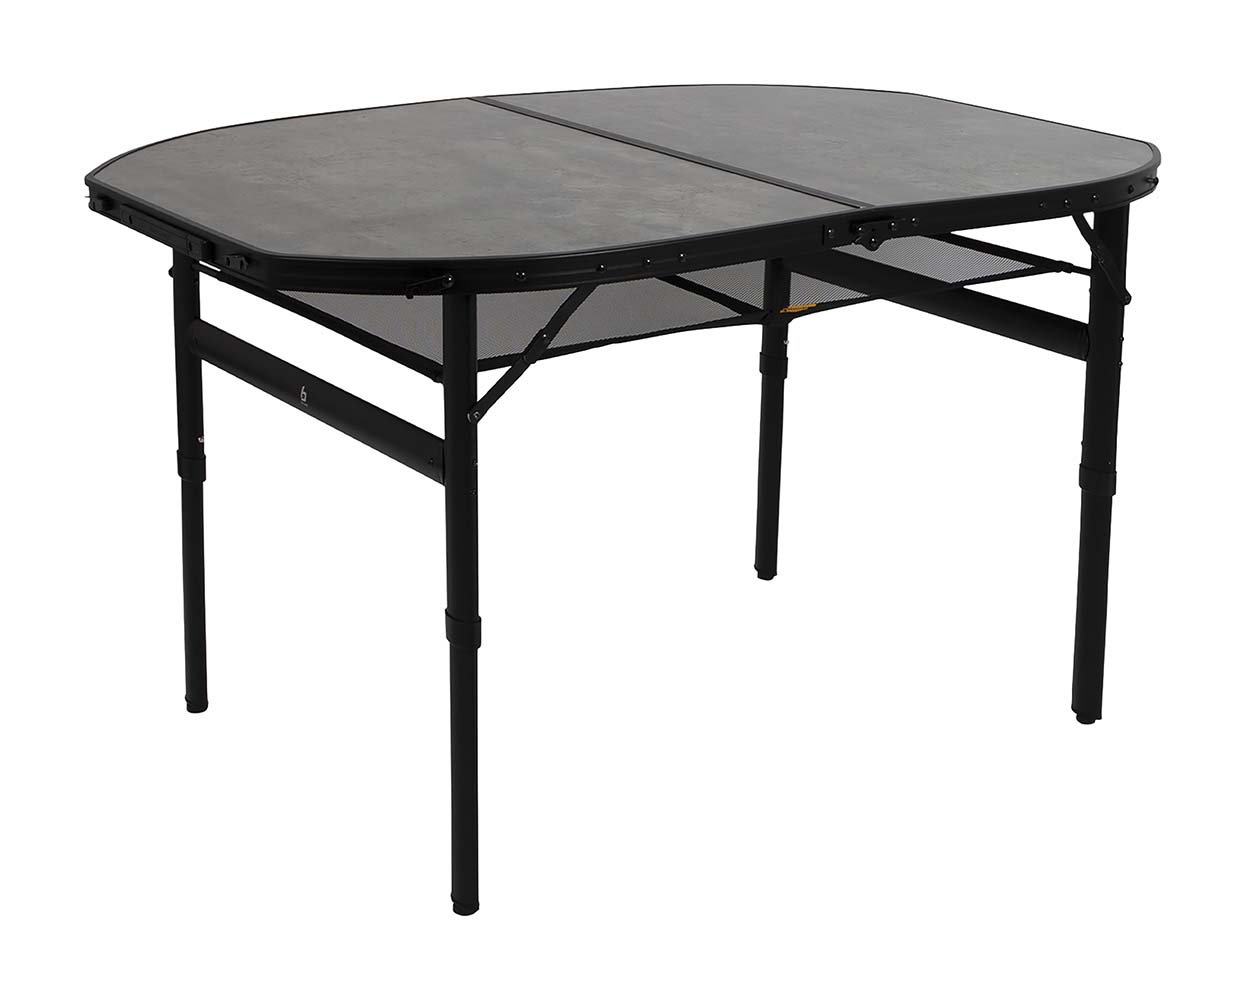 1404187 Een stijlvolle ovale aluminium tafel met een industriële uitstraling en betonlook tafelblad. Door middel van stelschroeven zijn de tafelpoten af te stellen op een ongelijke ondergrond. Daarnaast is de tafel zeer compact als koffermodel op te bergen door de afneembare poten en een deelbaar blad. Bovendien is de tafel voorzien van een net onder het MDF tafelblad om spullen in op te bergen, en een handgreep waardoor de tafel gemakkelijk is mee te nemen. De tafel is in hoogte verstelbaar: 36/70 cm.